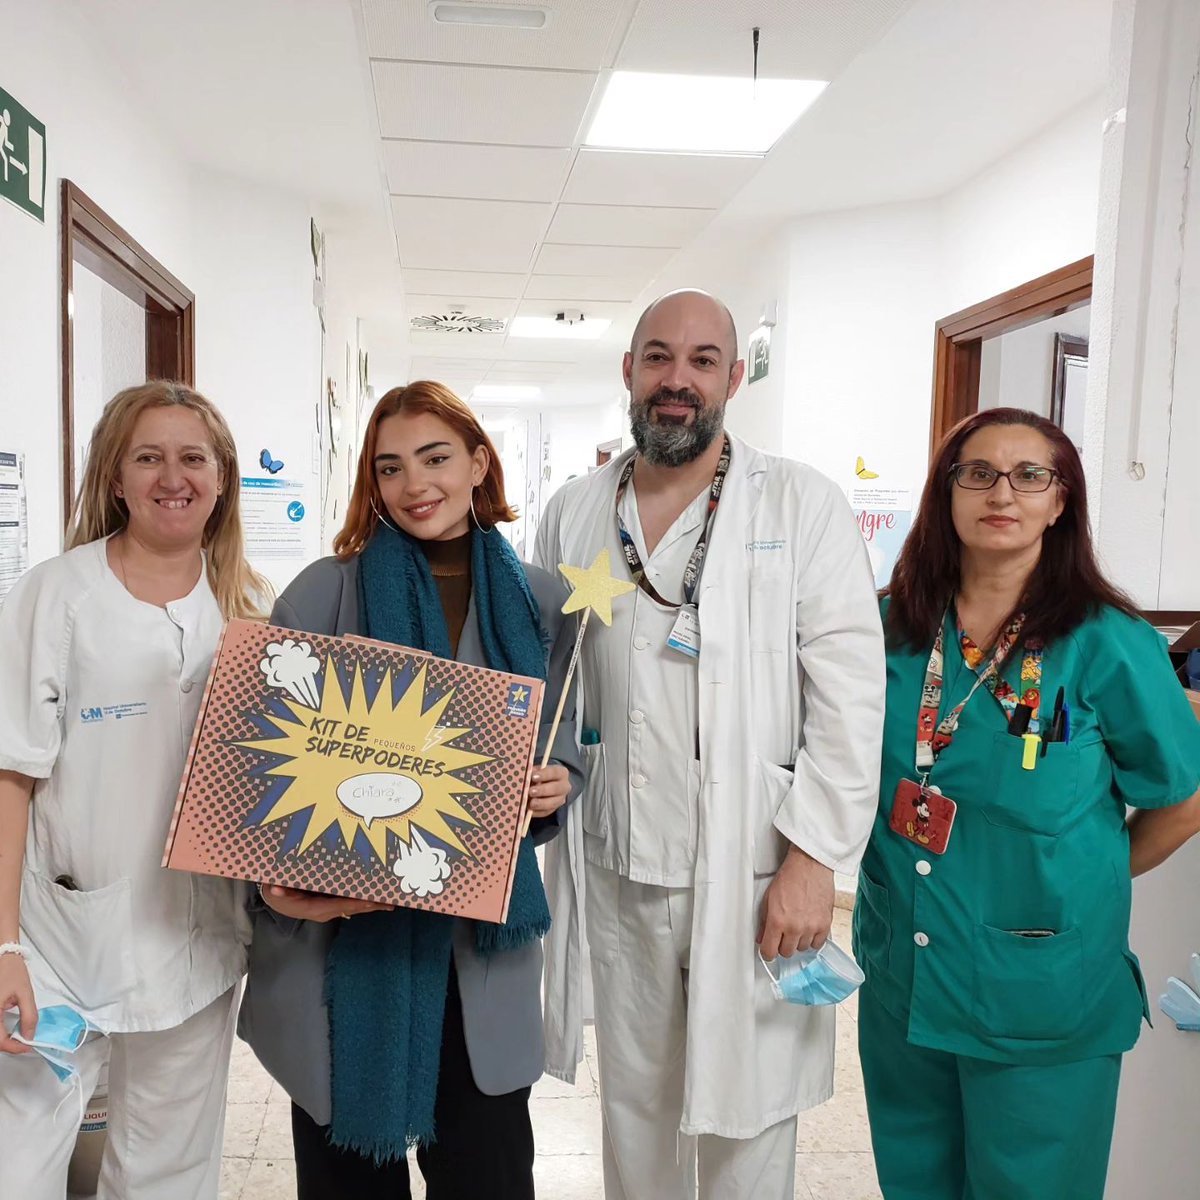 📷 | Fundación Pequeño Deseo (@fpdeseo) vía Instagram Post. 'Hoy algunos de los niños del hospital 12 de Octubre de Madrid han vivido un rato muy emocionante gracias a la visita de @violeta.ot2023. ¡Muchas gracias, Violeta, por tu simpatía y cariño!'